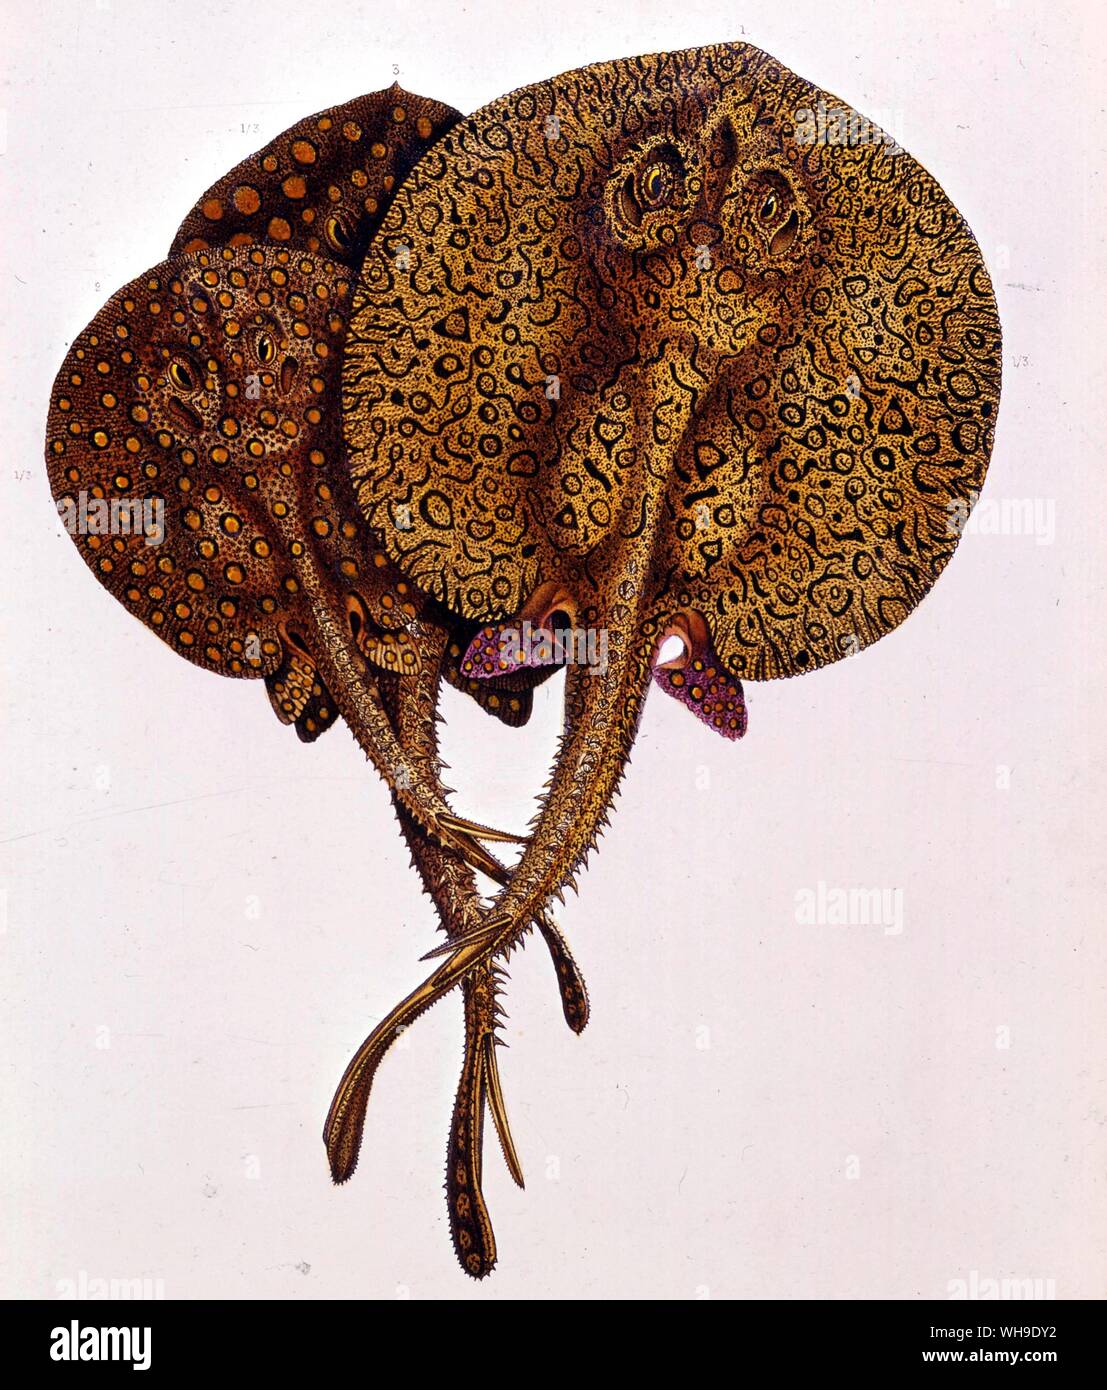 Trigoni abbondava in fondali sabbiosi del Orinoco. Immagine da L'Amerique du Sud da Francesco de Castelnau, la Royal Geographical Society di Londra. Foto Stock